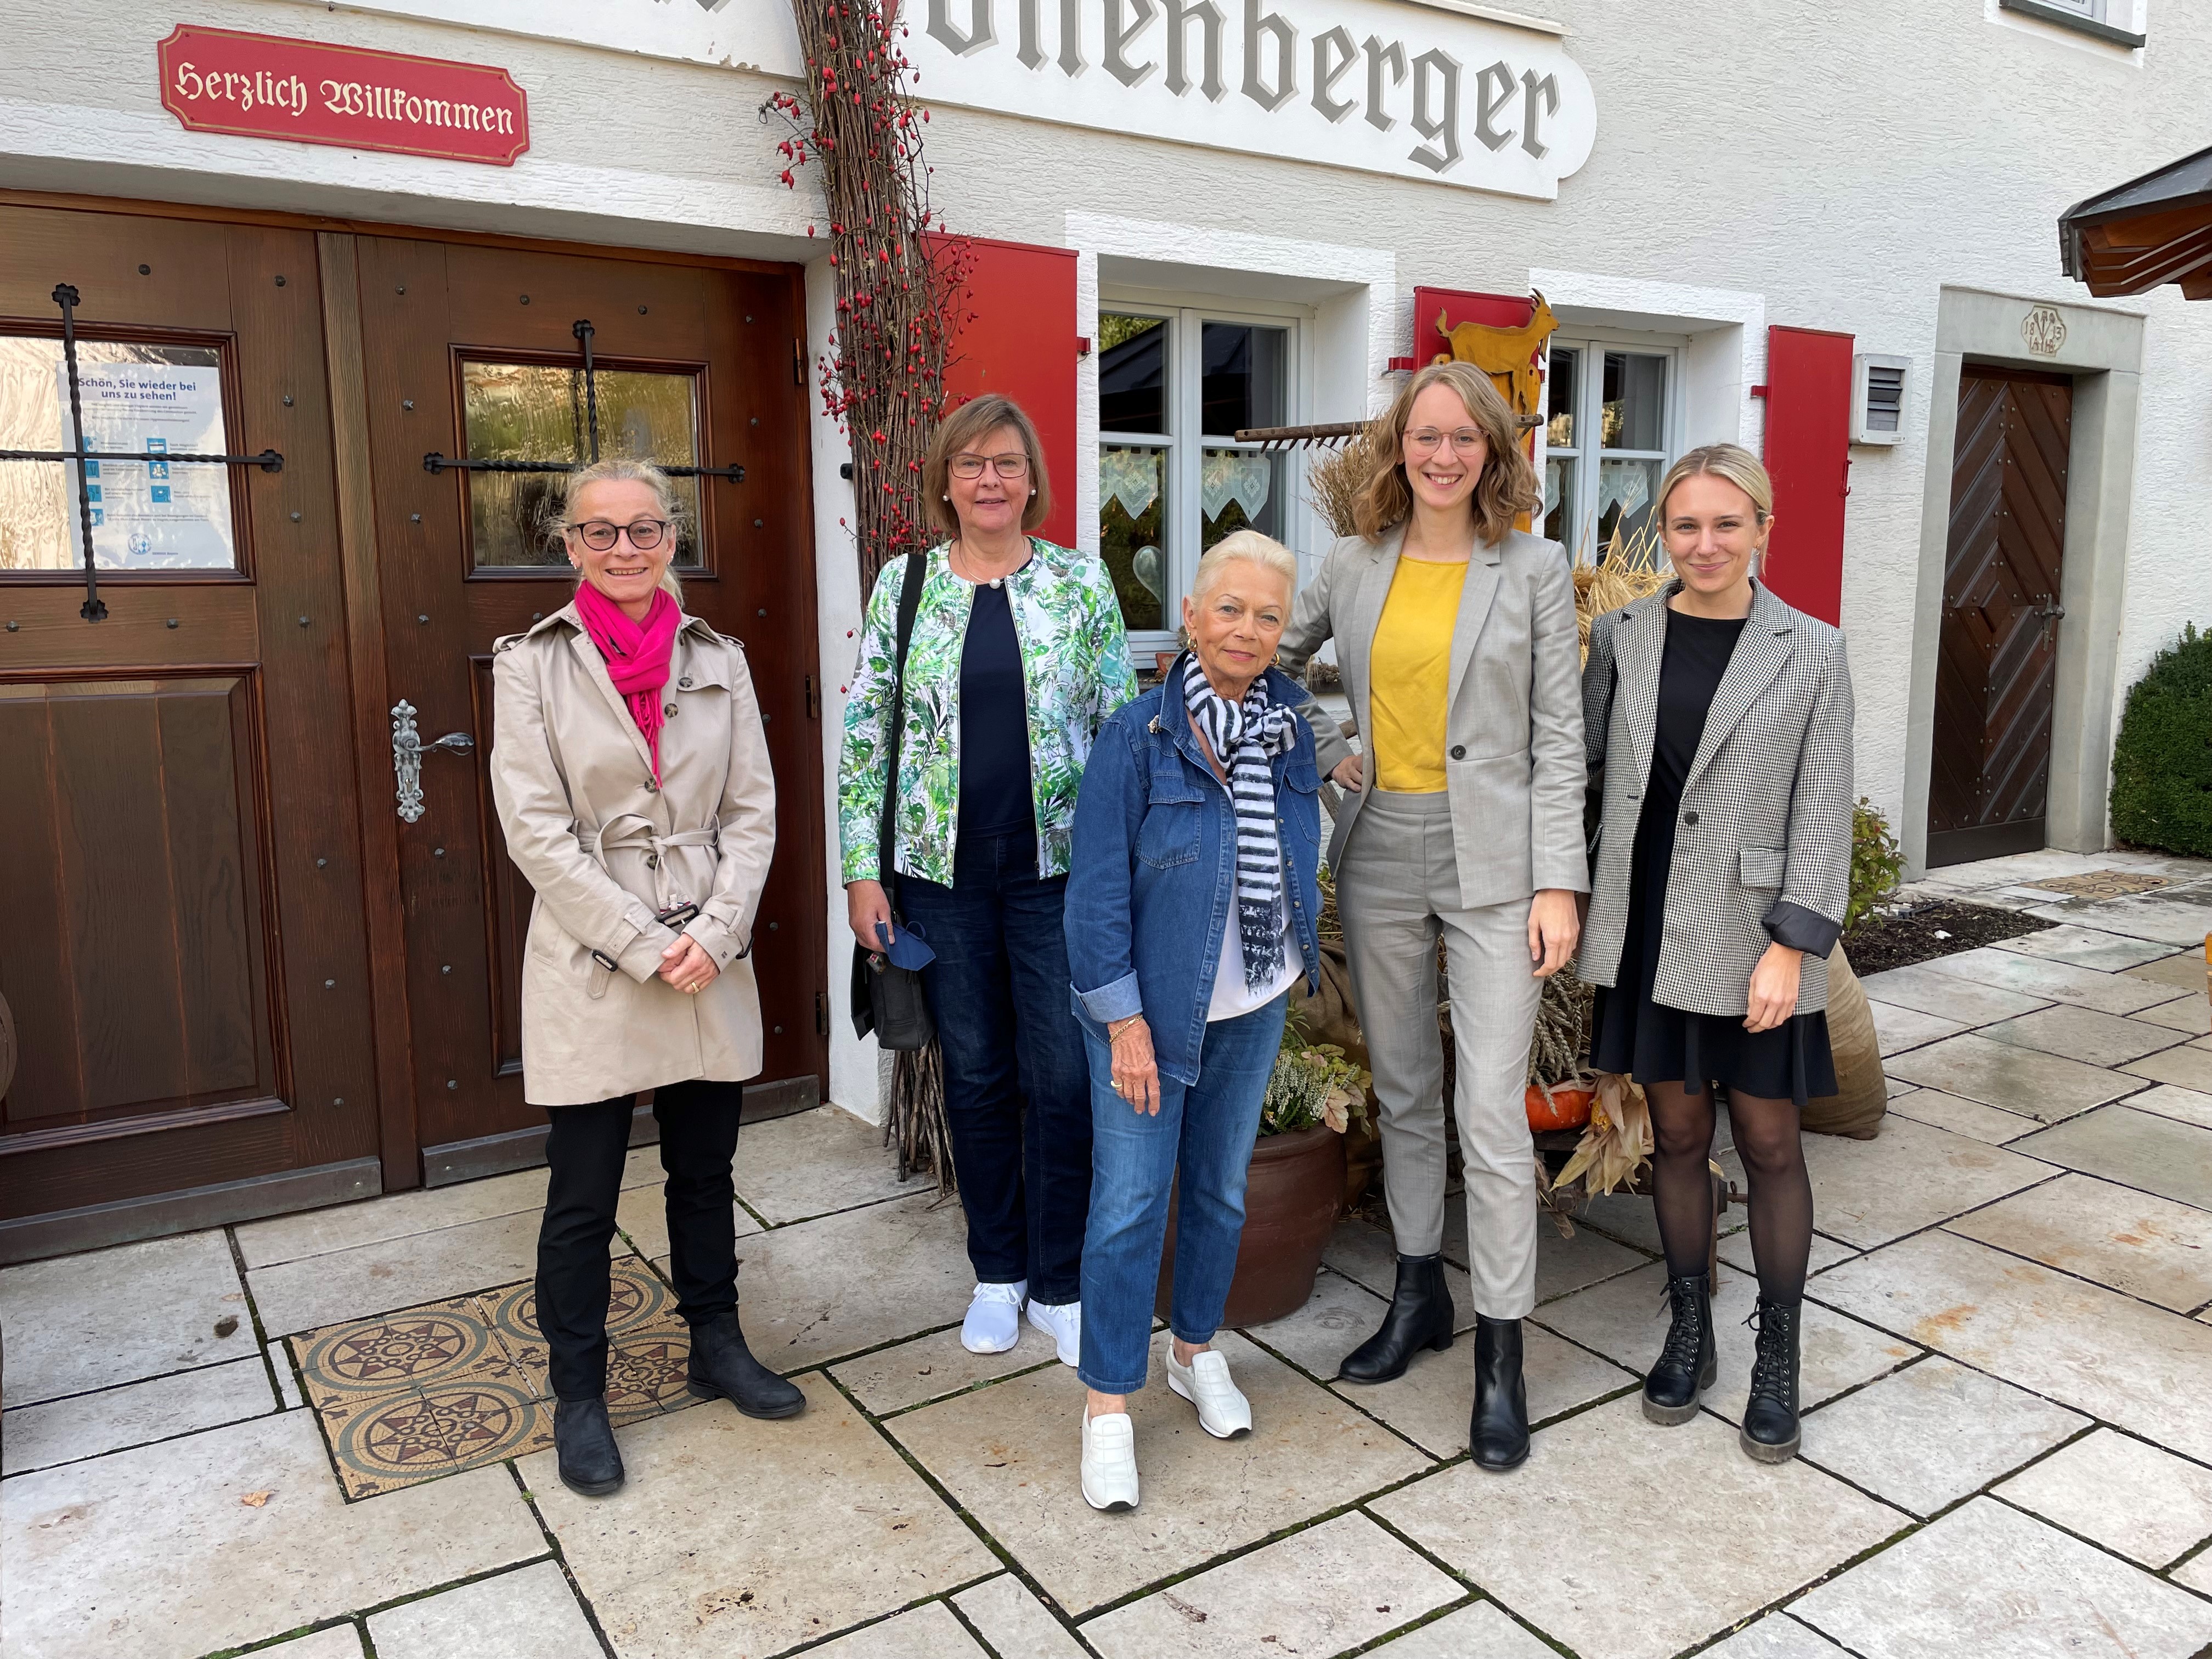 Eva Lettenbauer bei ihrem Besuch am 6.10. in Fürnheim in der Forstquellbrauerei